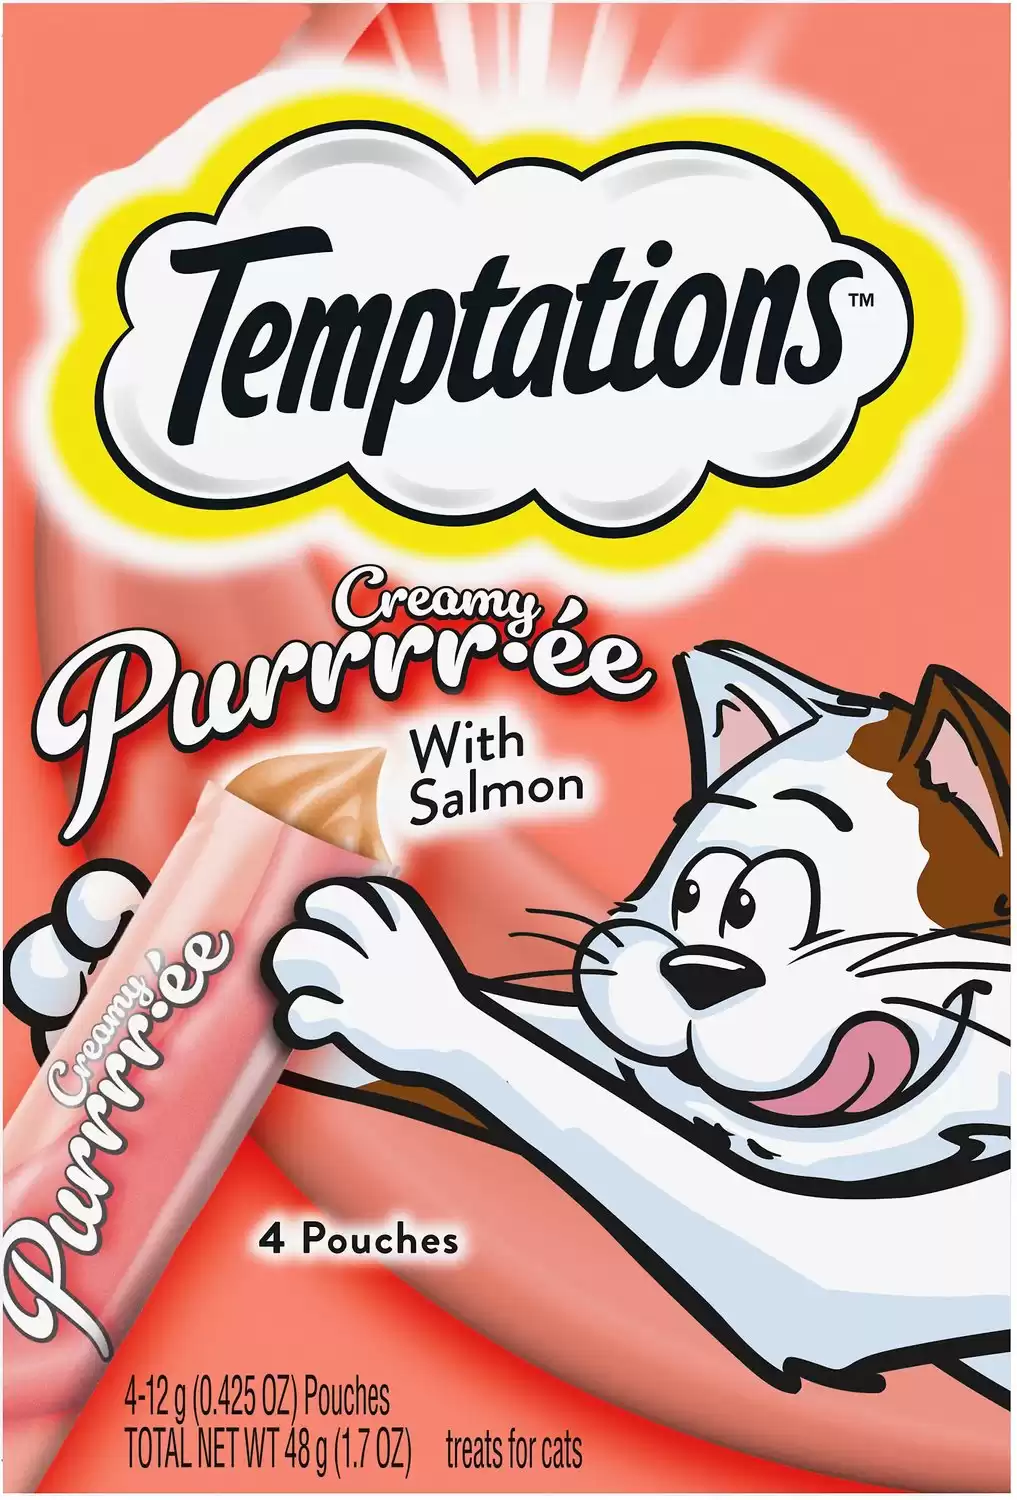 Temptations Creamy Purrr-ee Lickable Cat Treats